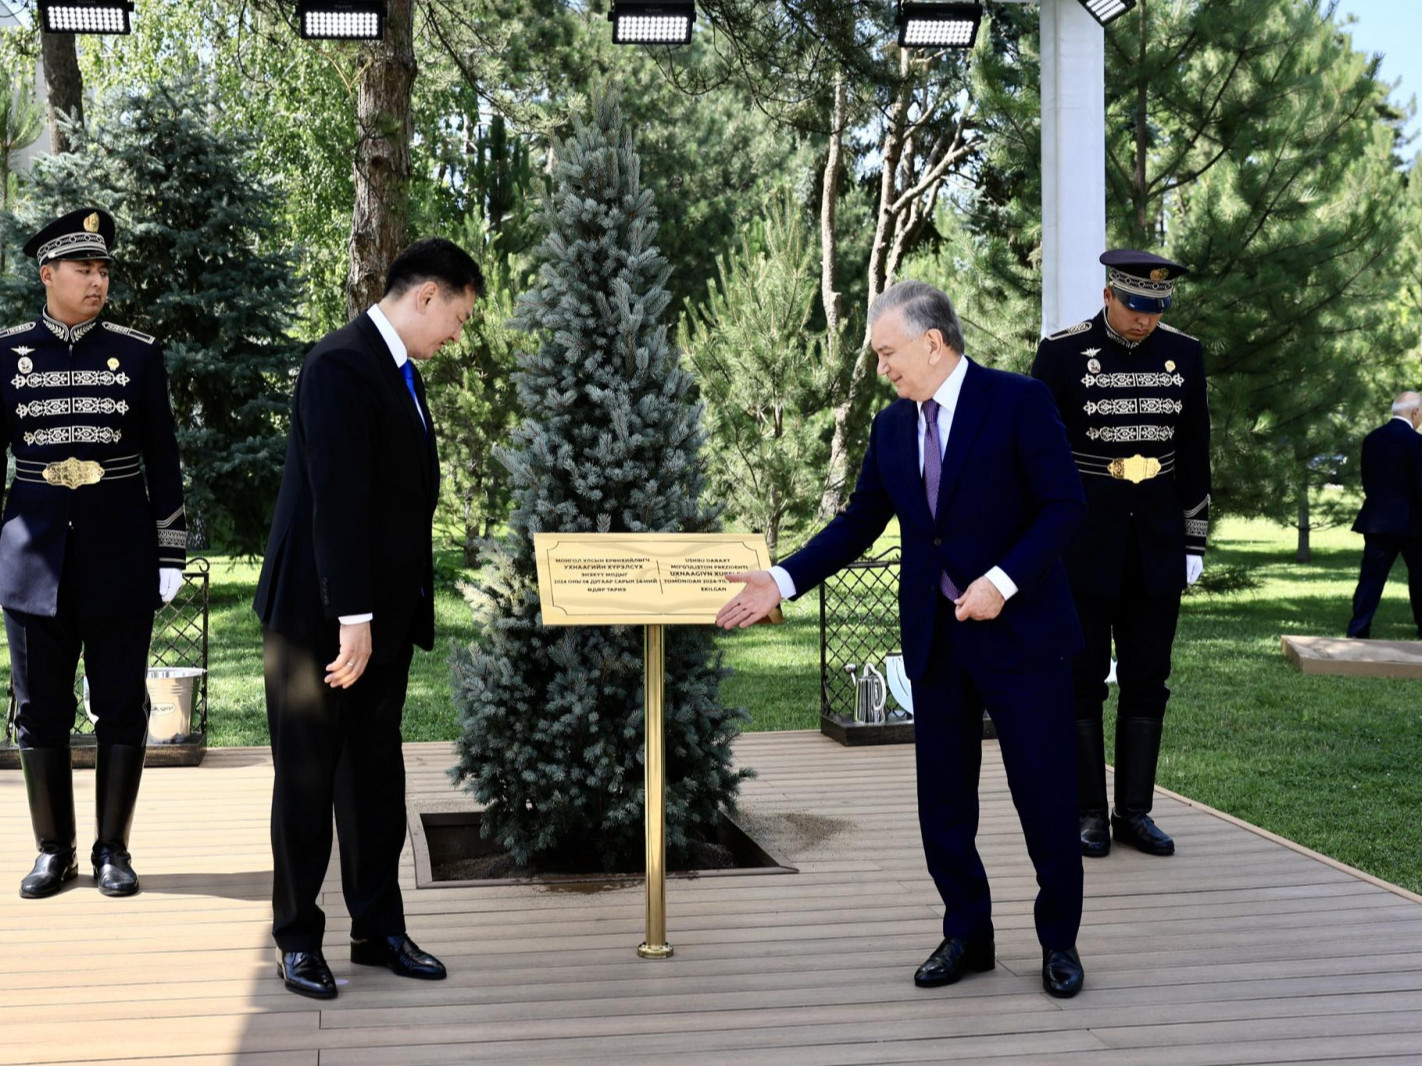  Ерөнхийлөгч У.Хүрэлсүх, Узбекистаны Ерөнхийлөгч Ш.Мирзиёев нар дурсгалын мод тарьжээ